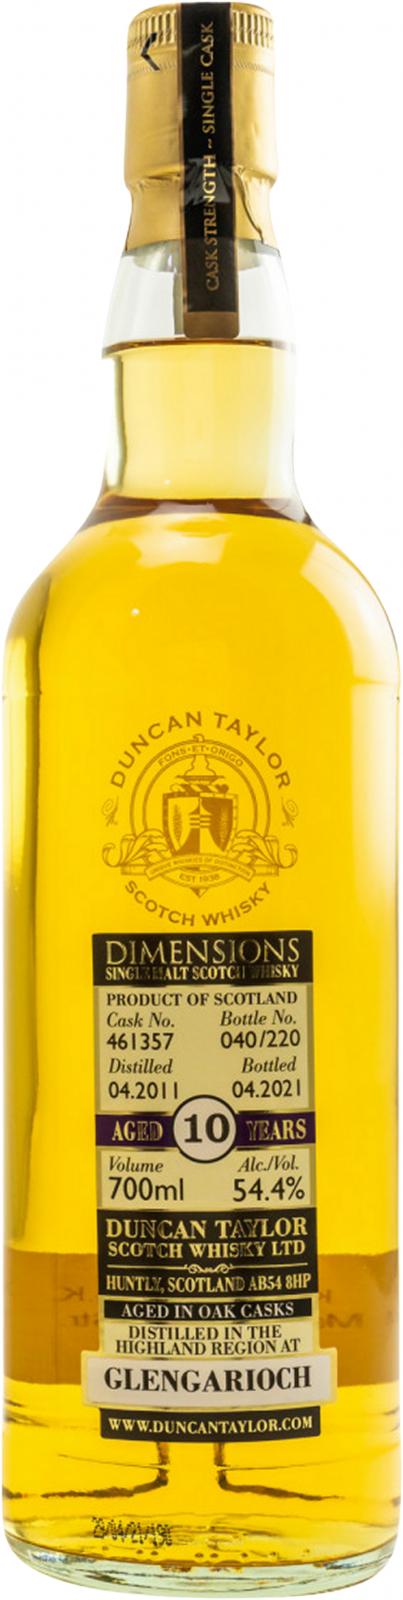 Glen Garioch 2011 DT Dimensions 10 Year Old 2021 Release (Cask #461357) Single Malt Scotch Whisky | 700ML